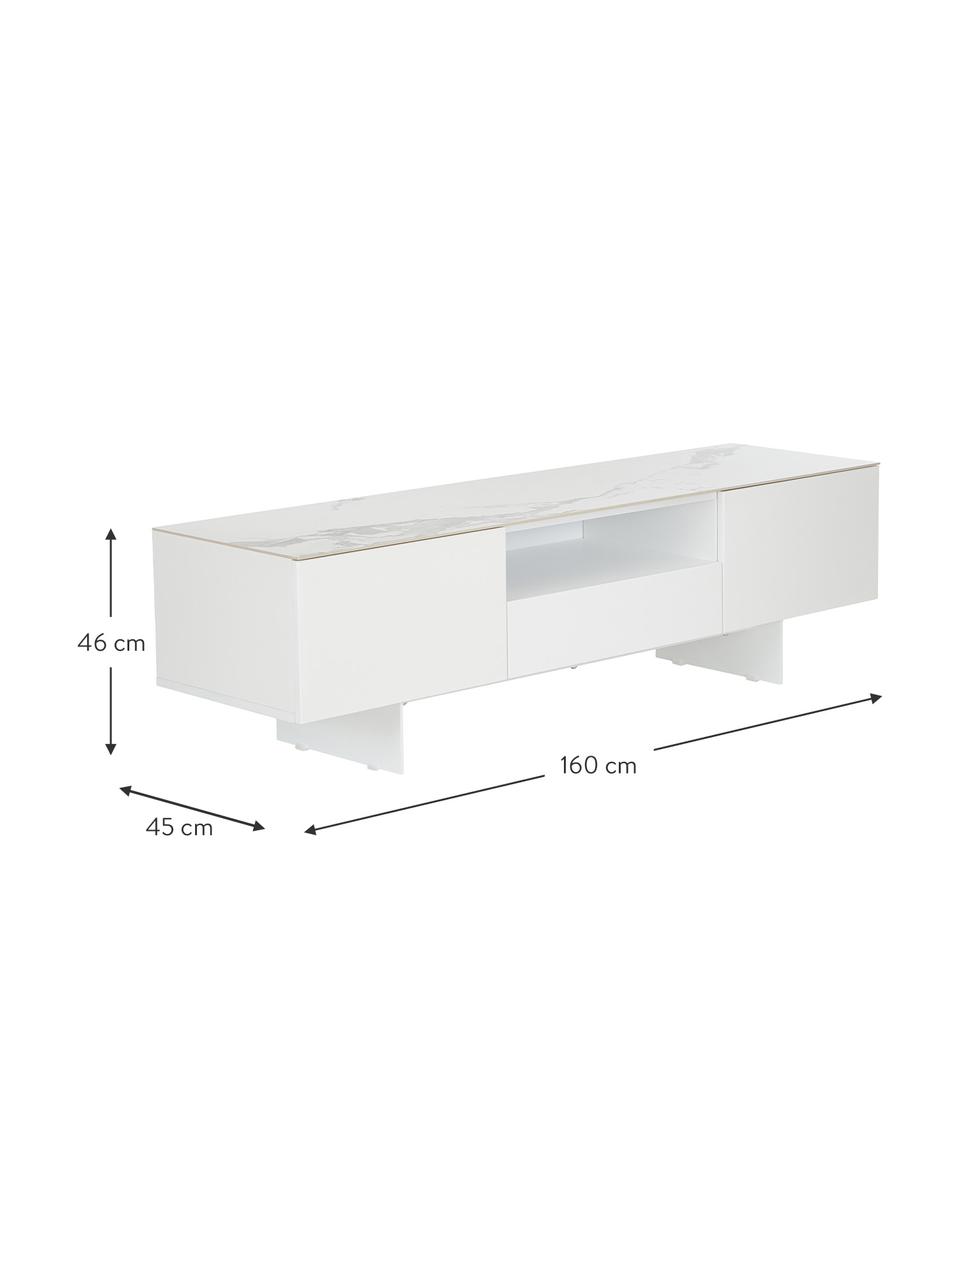 Witte Tv-meubel Fiona met oppervlak in marmerlook, Frame: gelakt MDF, Poten: gepoedercoat metaal, Plank: keramiek, Frame: mat wit Poten: mat wit Plank: wit, gemarmerd, B 160 x H 46 cm